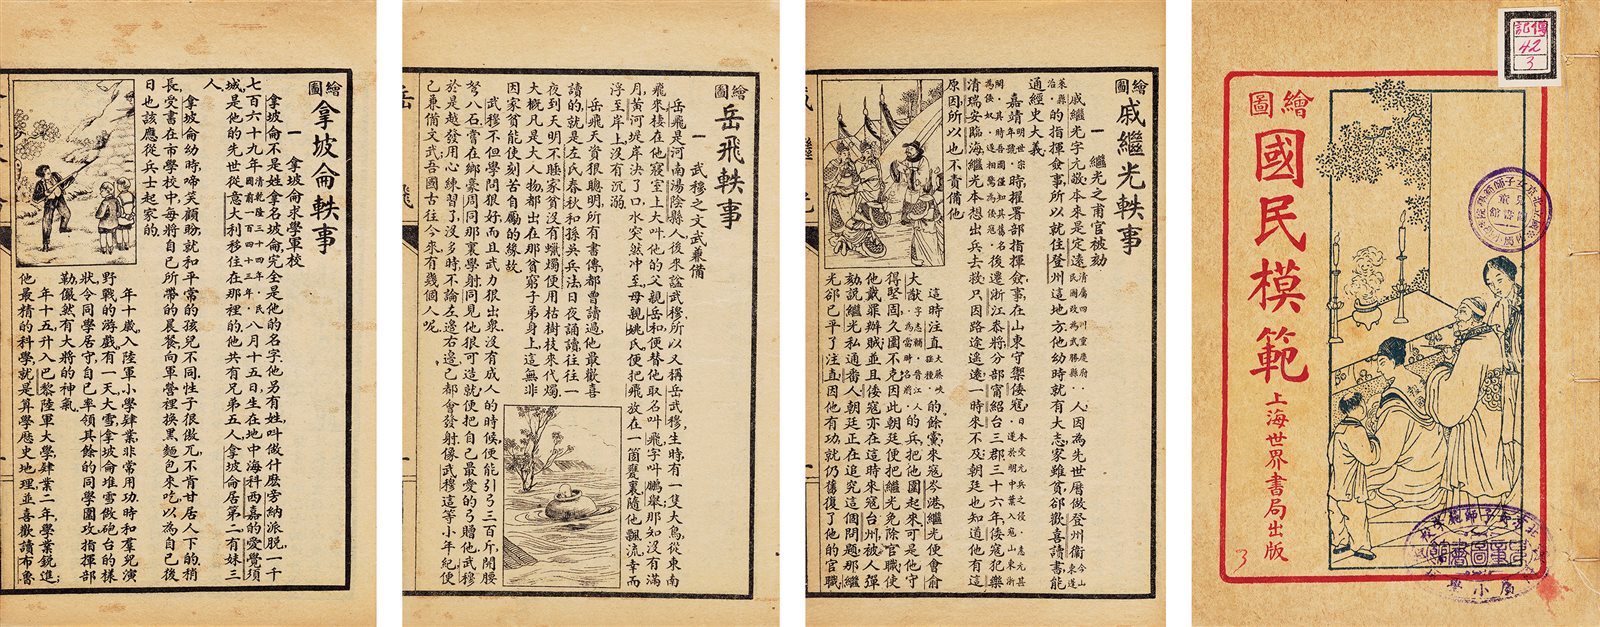 国民模范 民国十二年（1923）上海世界书局刊行